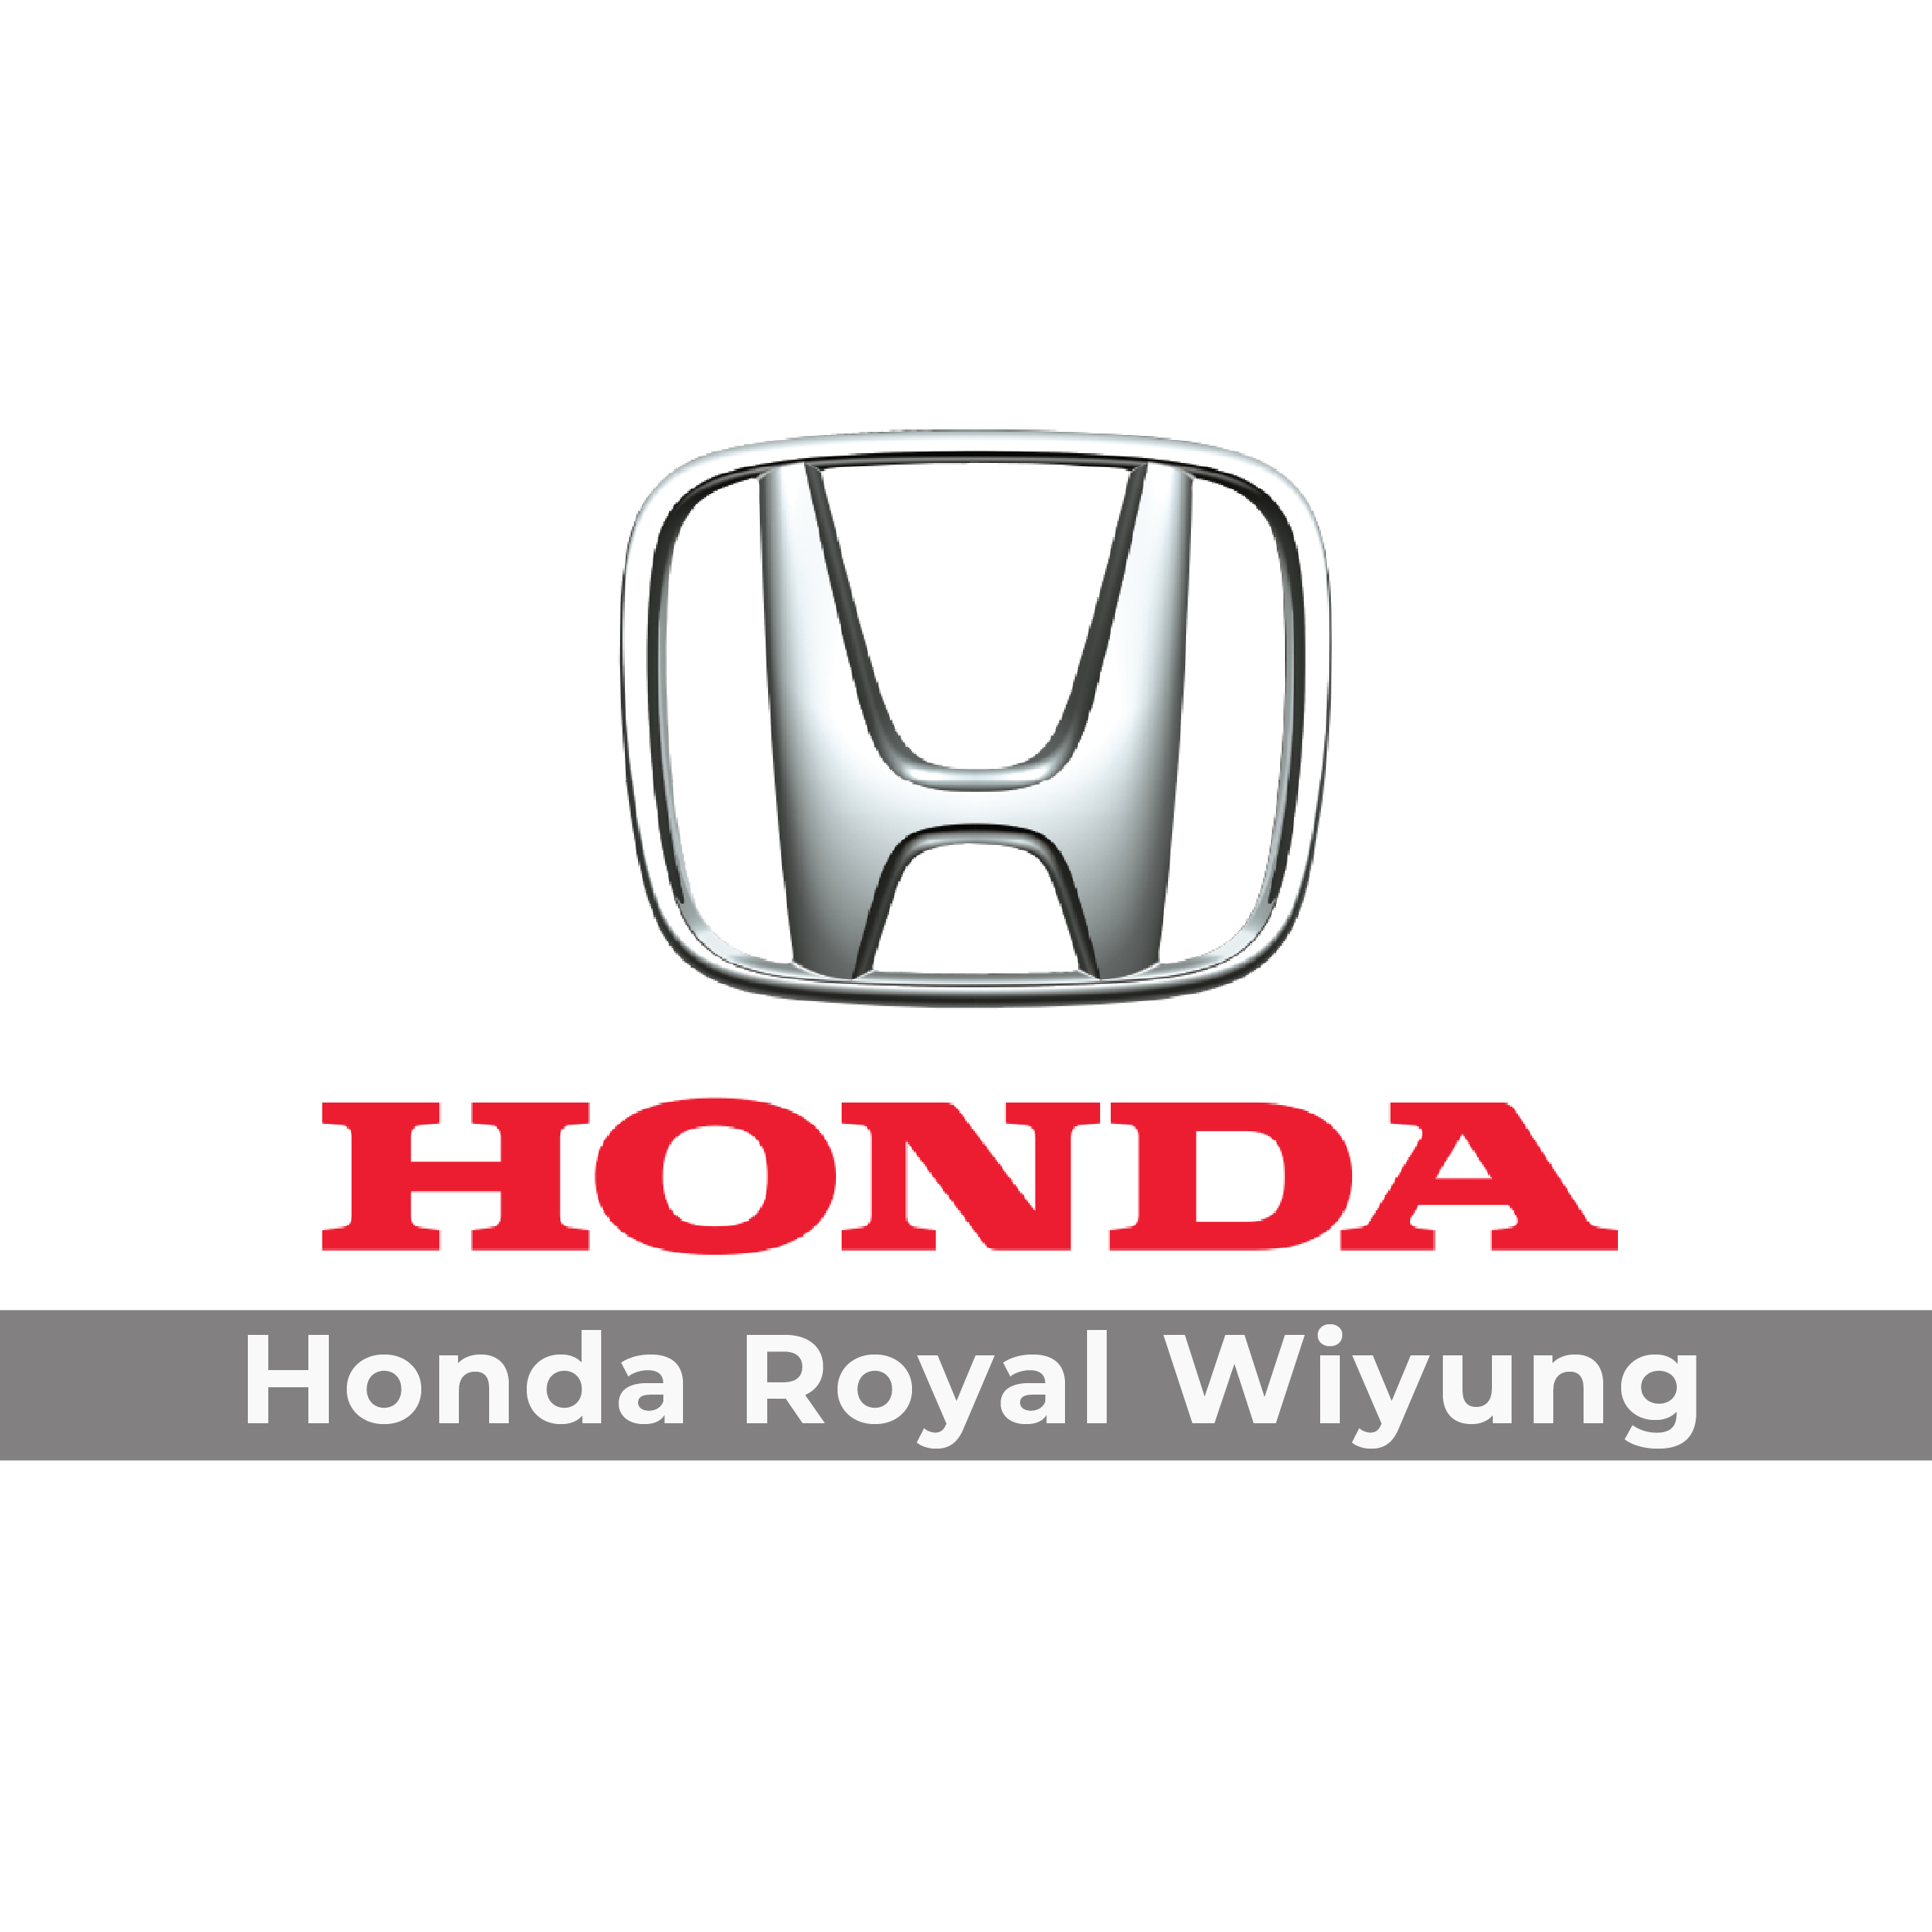 Honda Royal Wiyung Servis & Suku Cadang